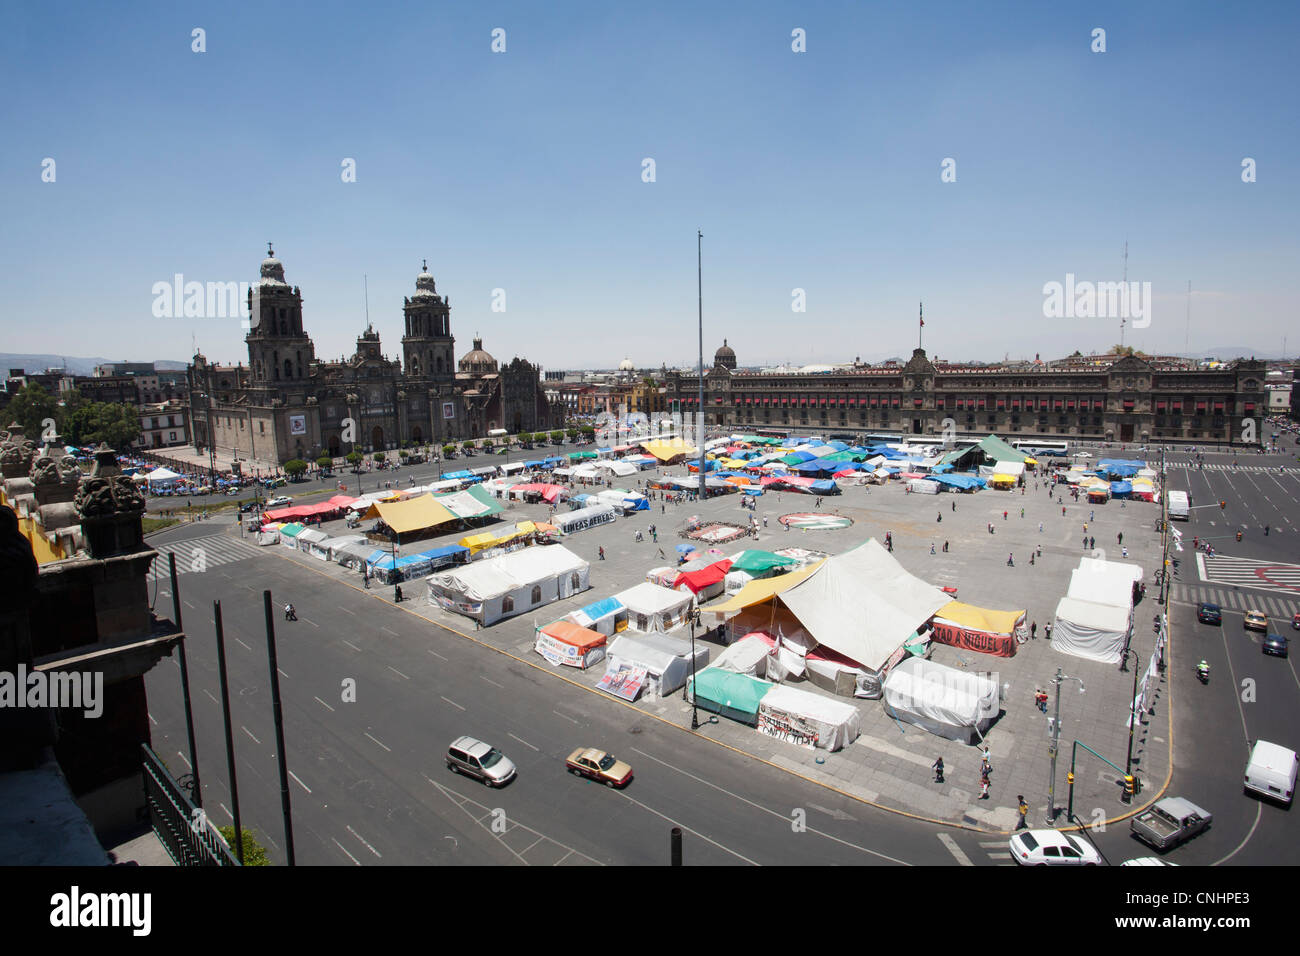 A market at Zocalo, Mexico City, Mexico Stock Photo